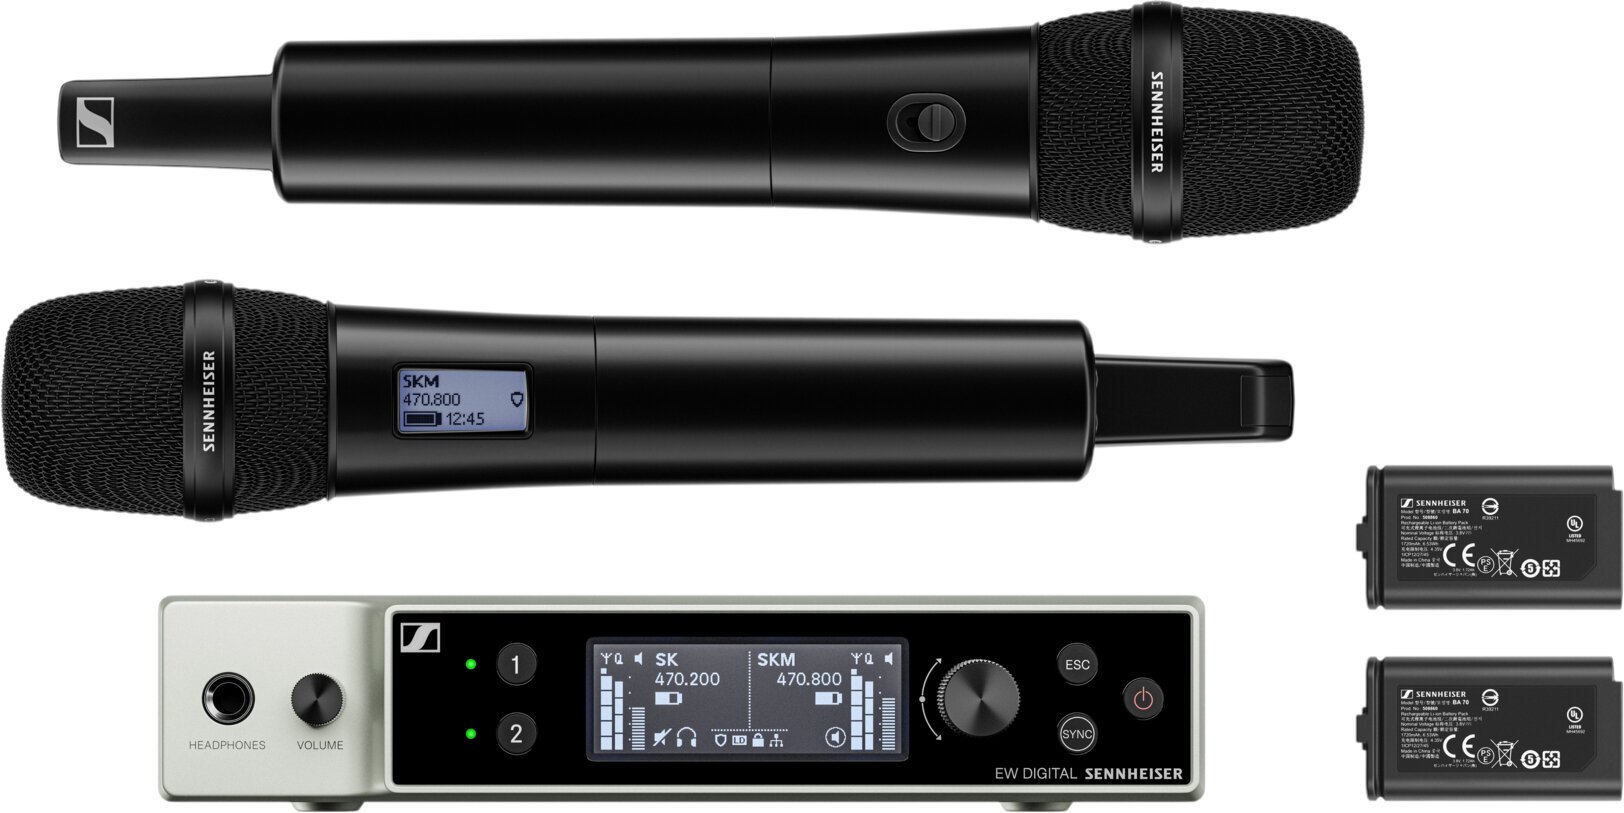 Wireless Handheld Microphone Set Sennheiser EW-DX 835-S Set S2-10: 614.2-693.8 MHz